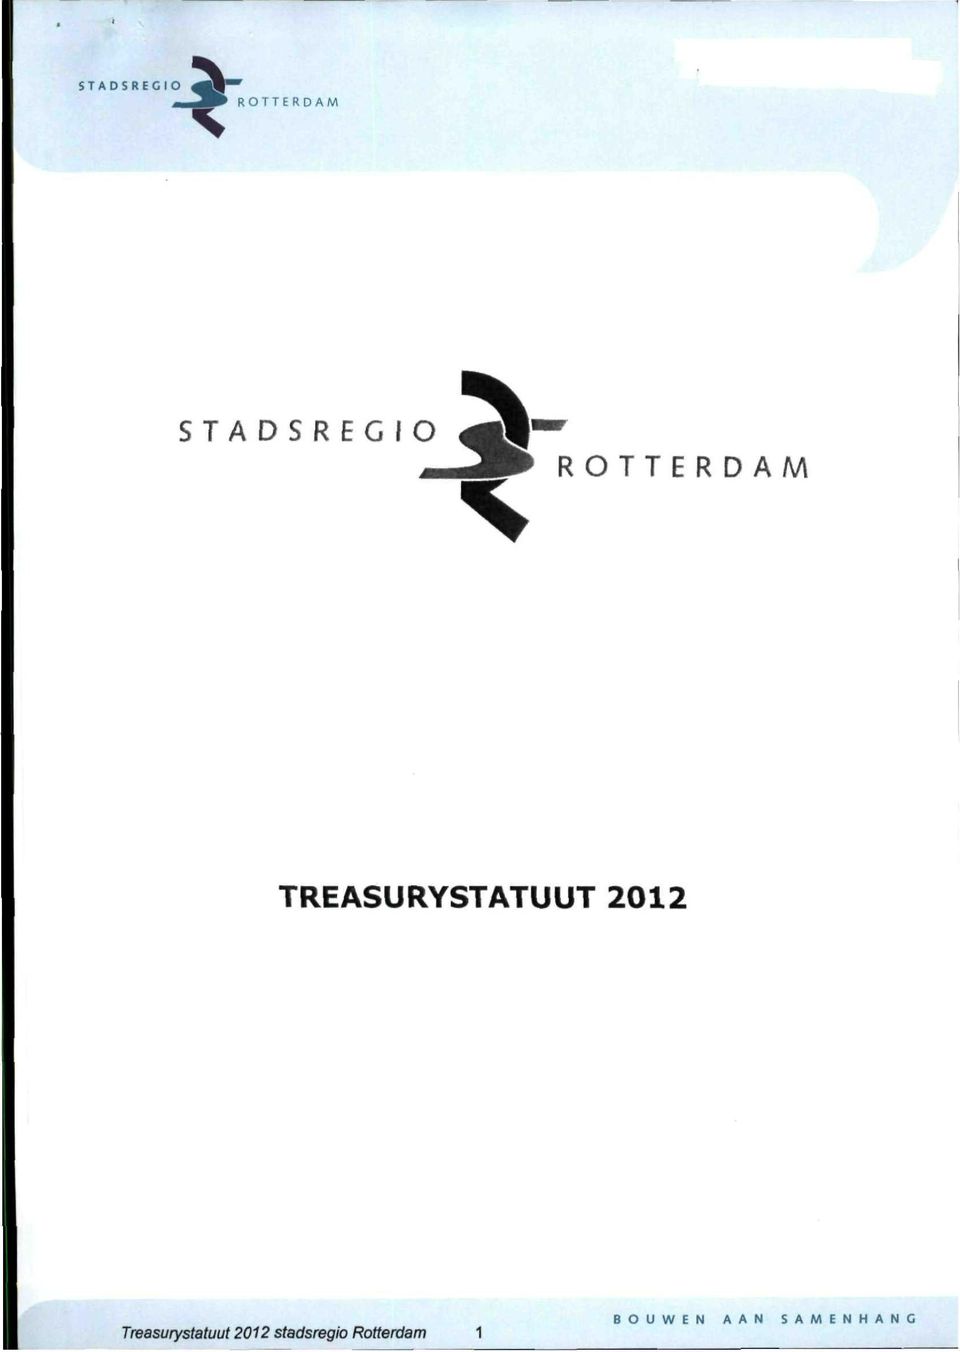 Treasurystatuut 2012 stadsregio